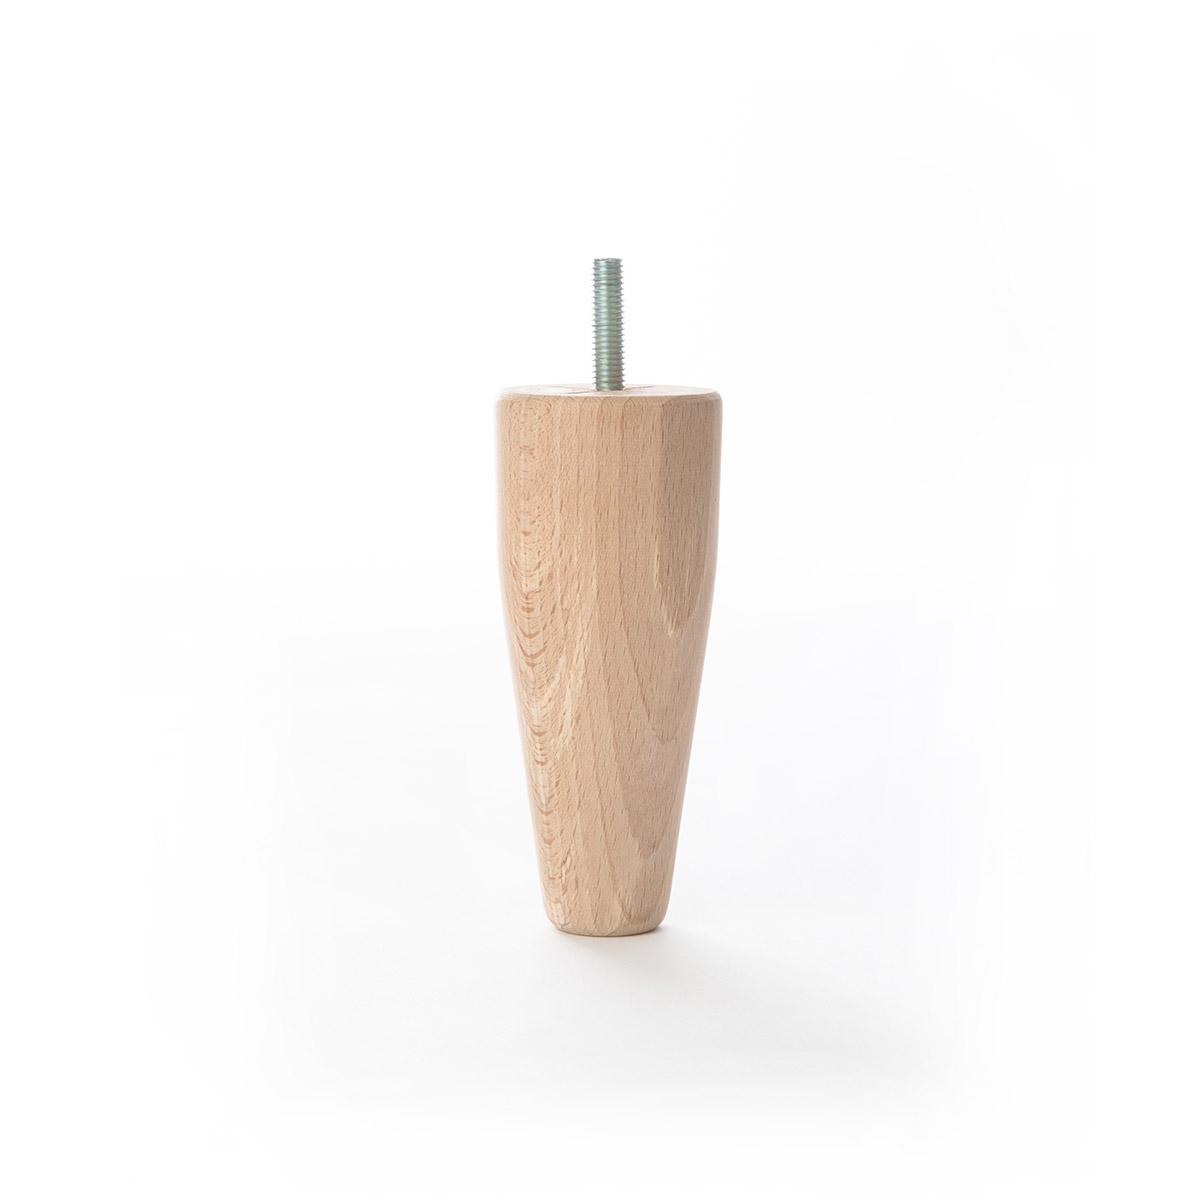 Pied conique en bois d'une hauteur de 120 mm et finition hêtre brut. Dimensions: 50x50x120 mm